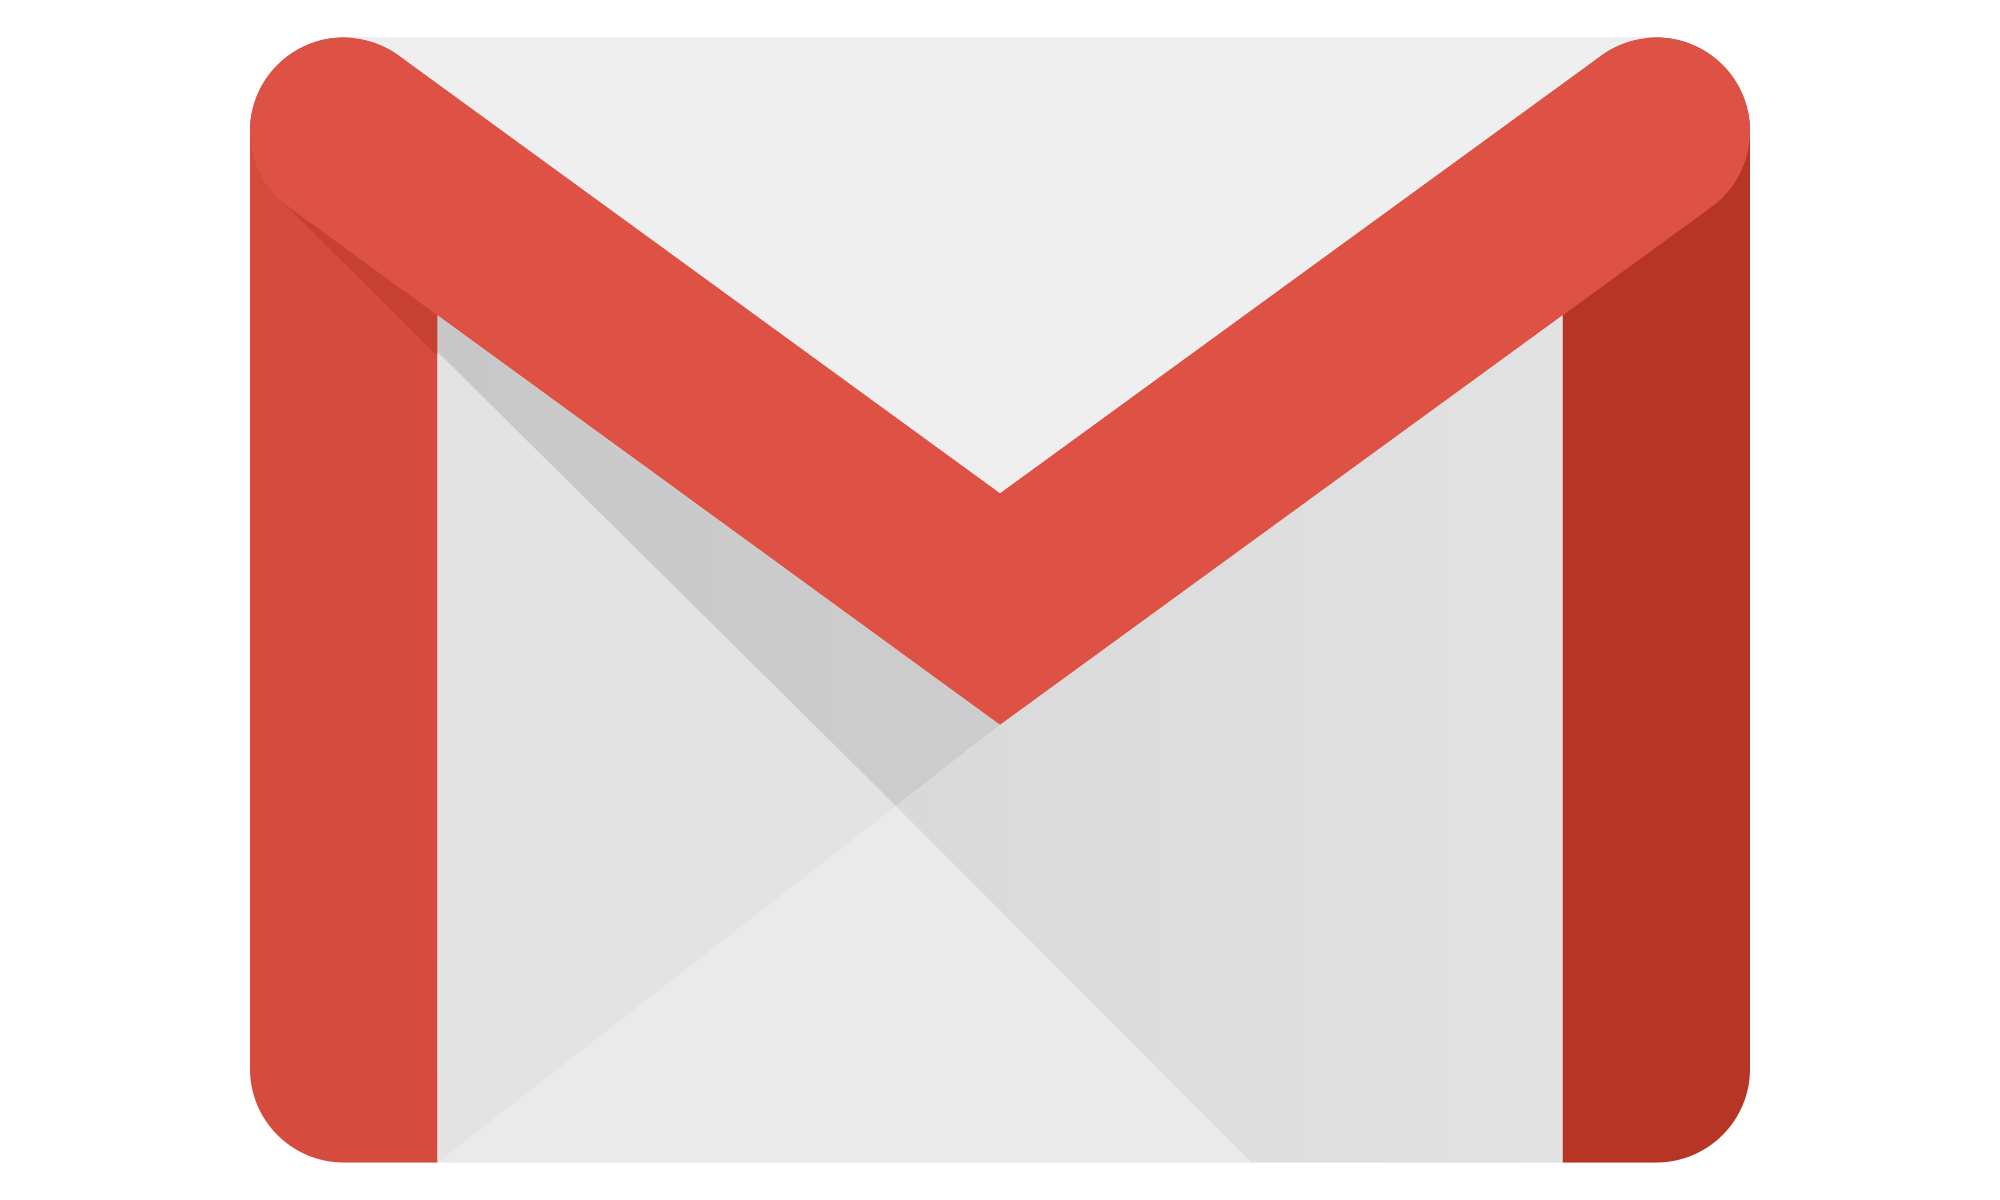 Resultado de imagen para logo de gmail 2018 png transparente